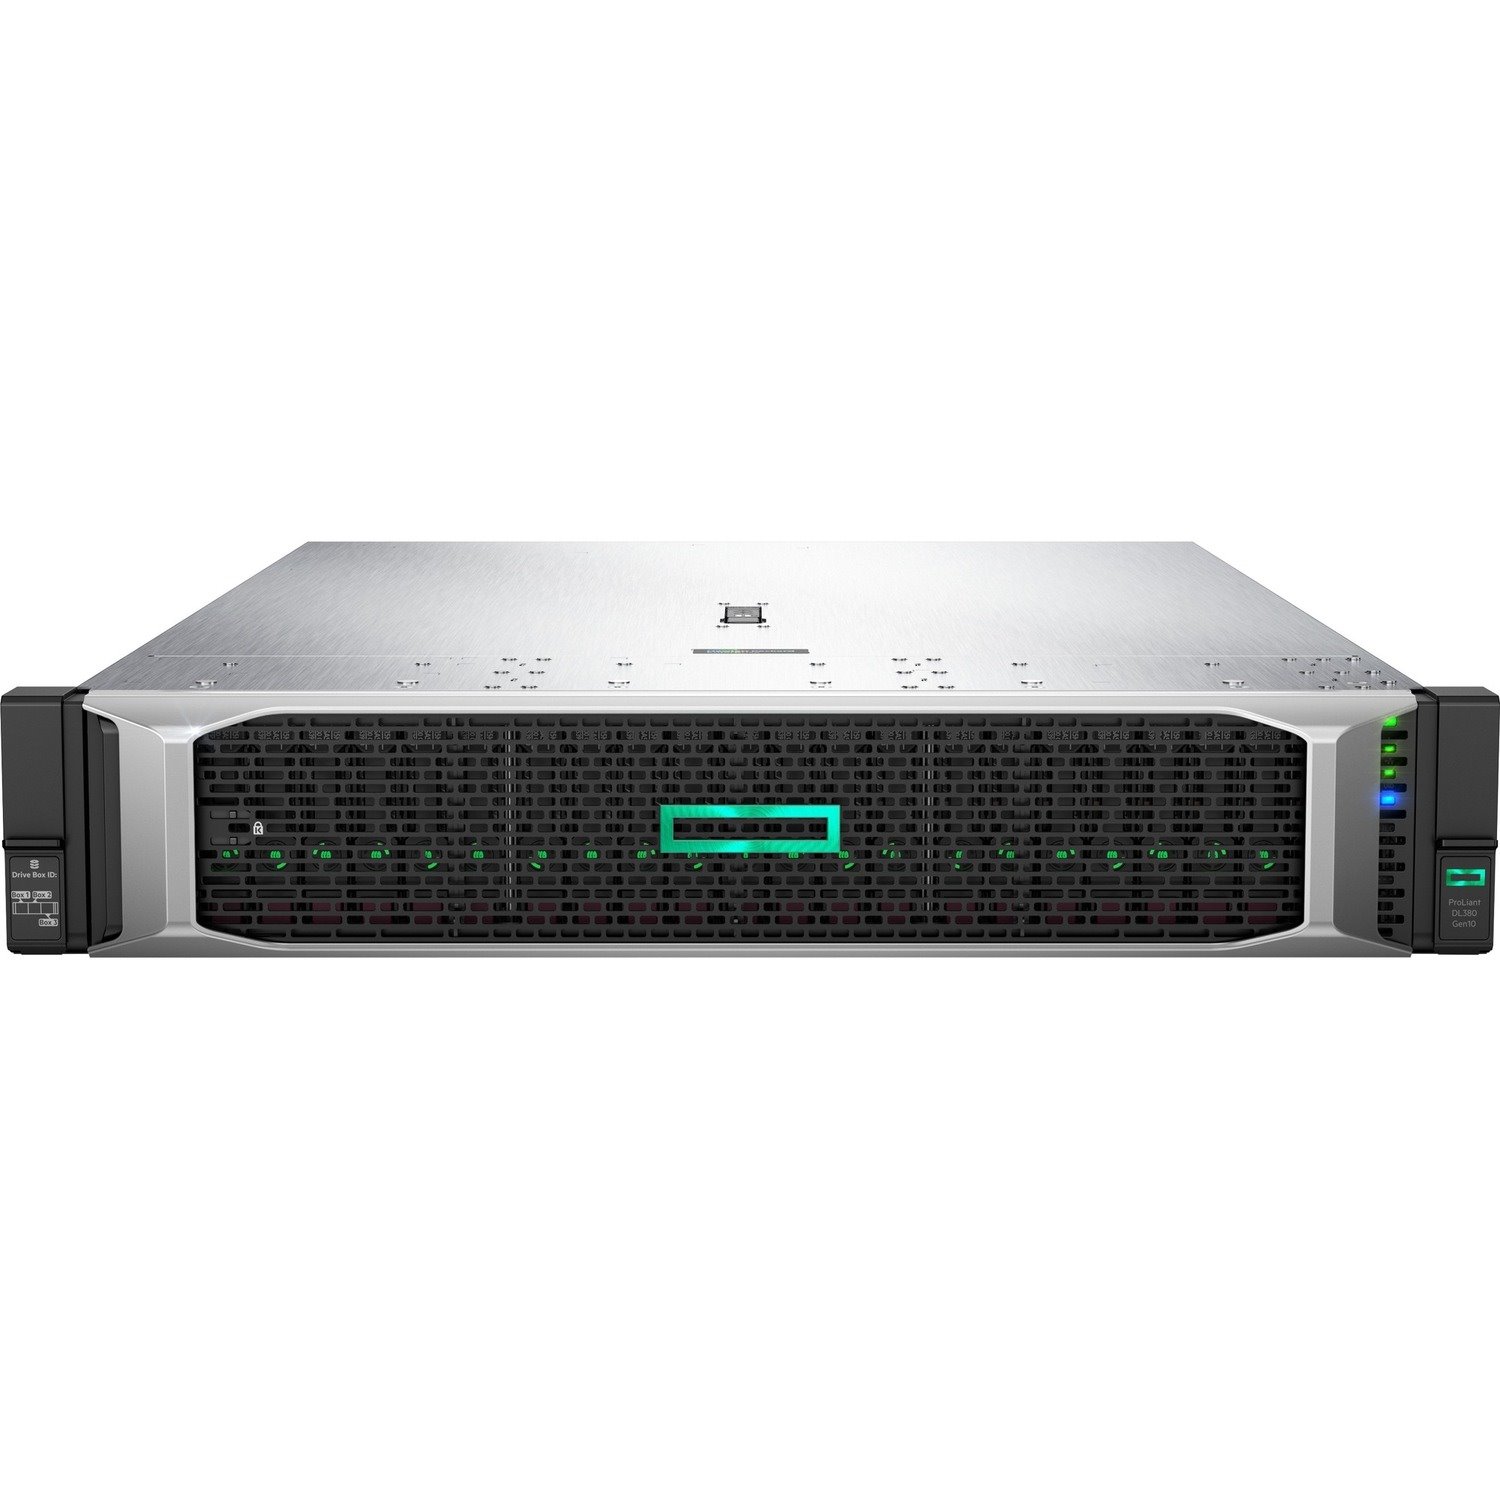 HPE ProLiant DL380 G10 2U Rack Server - 1 x Intel Xeon Gold 6248R 3 GHz - 32 GB RAM - Serial ATA/600 Controller